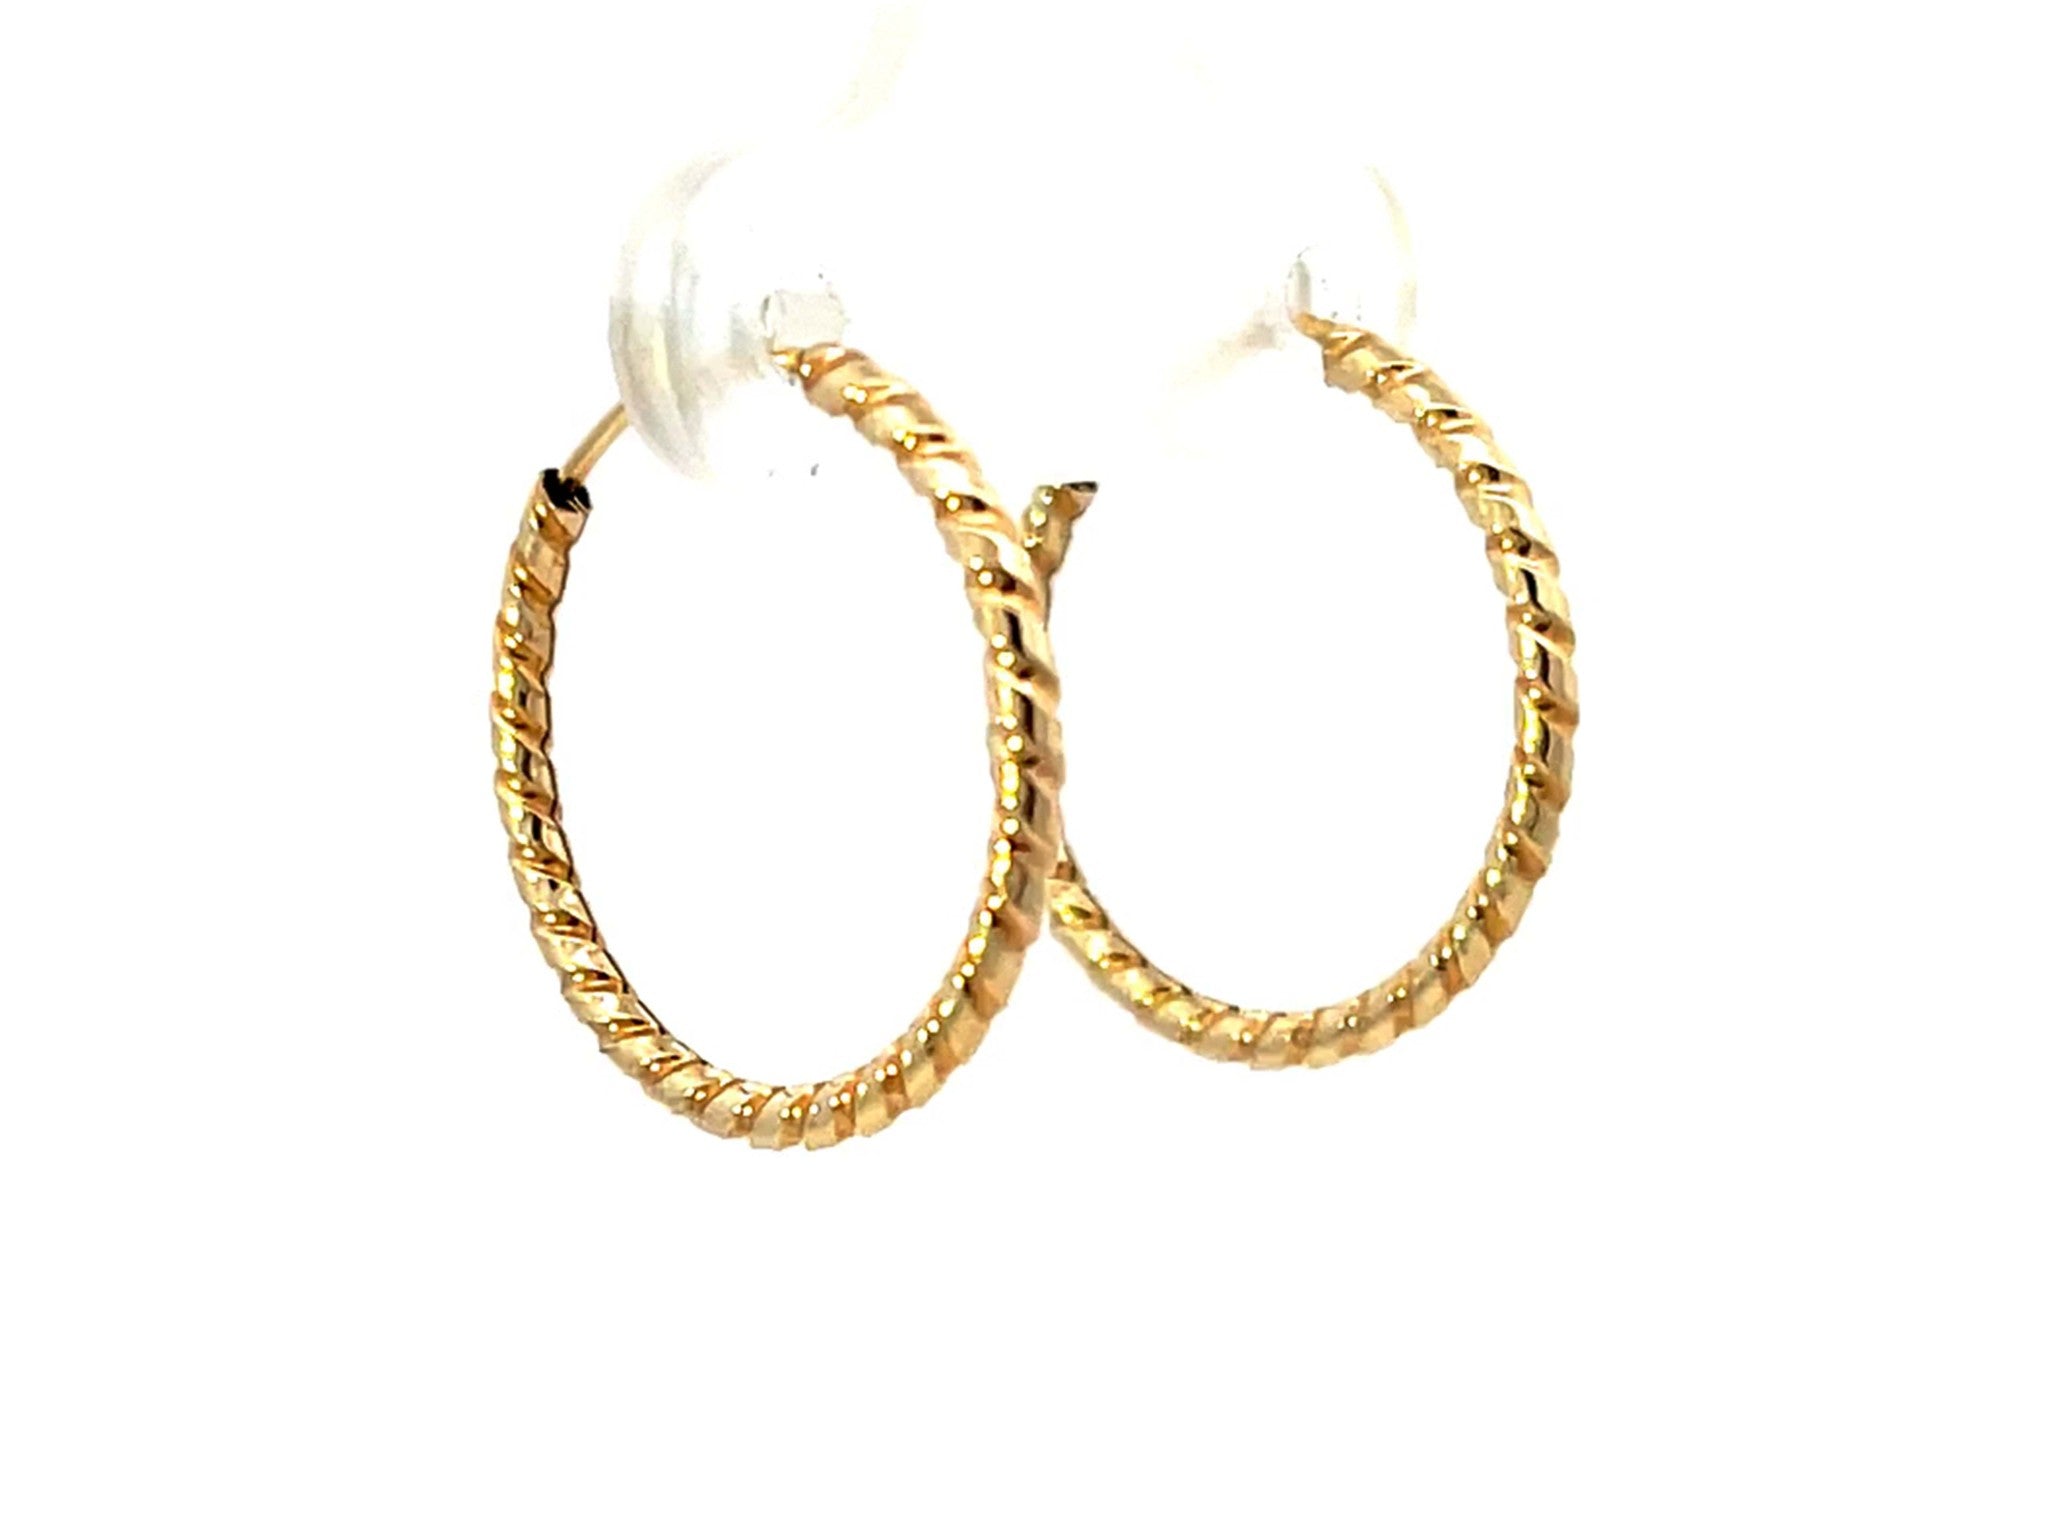 Solid 14K Yellow Gold Swirl Hoop Earrings